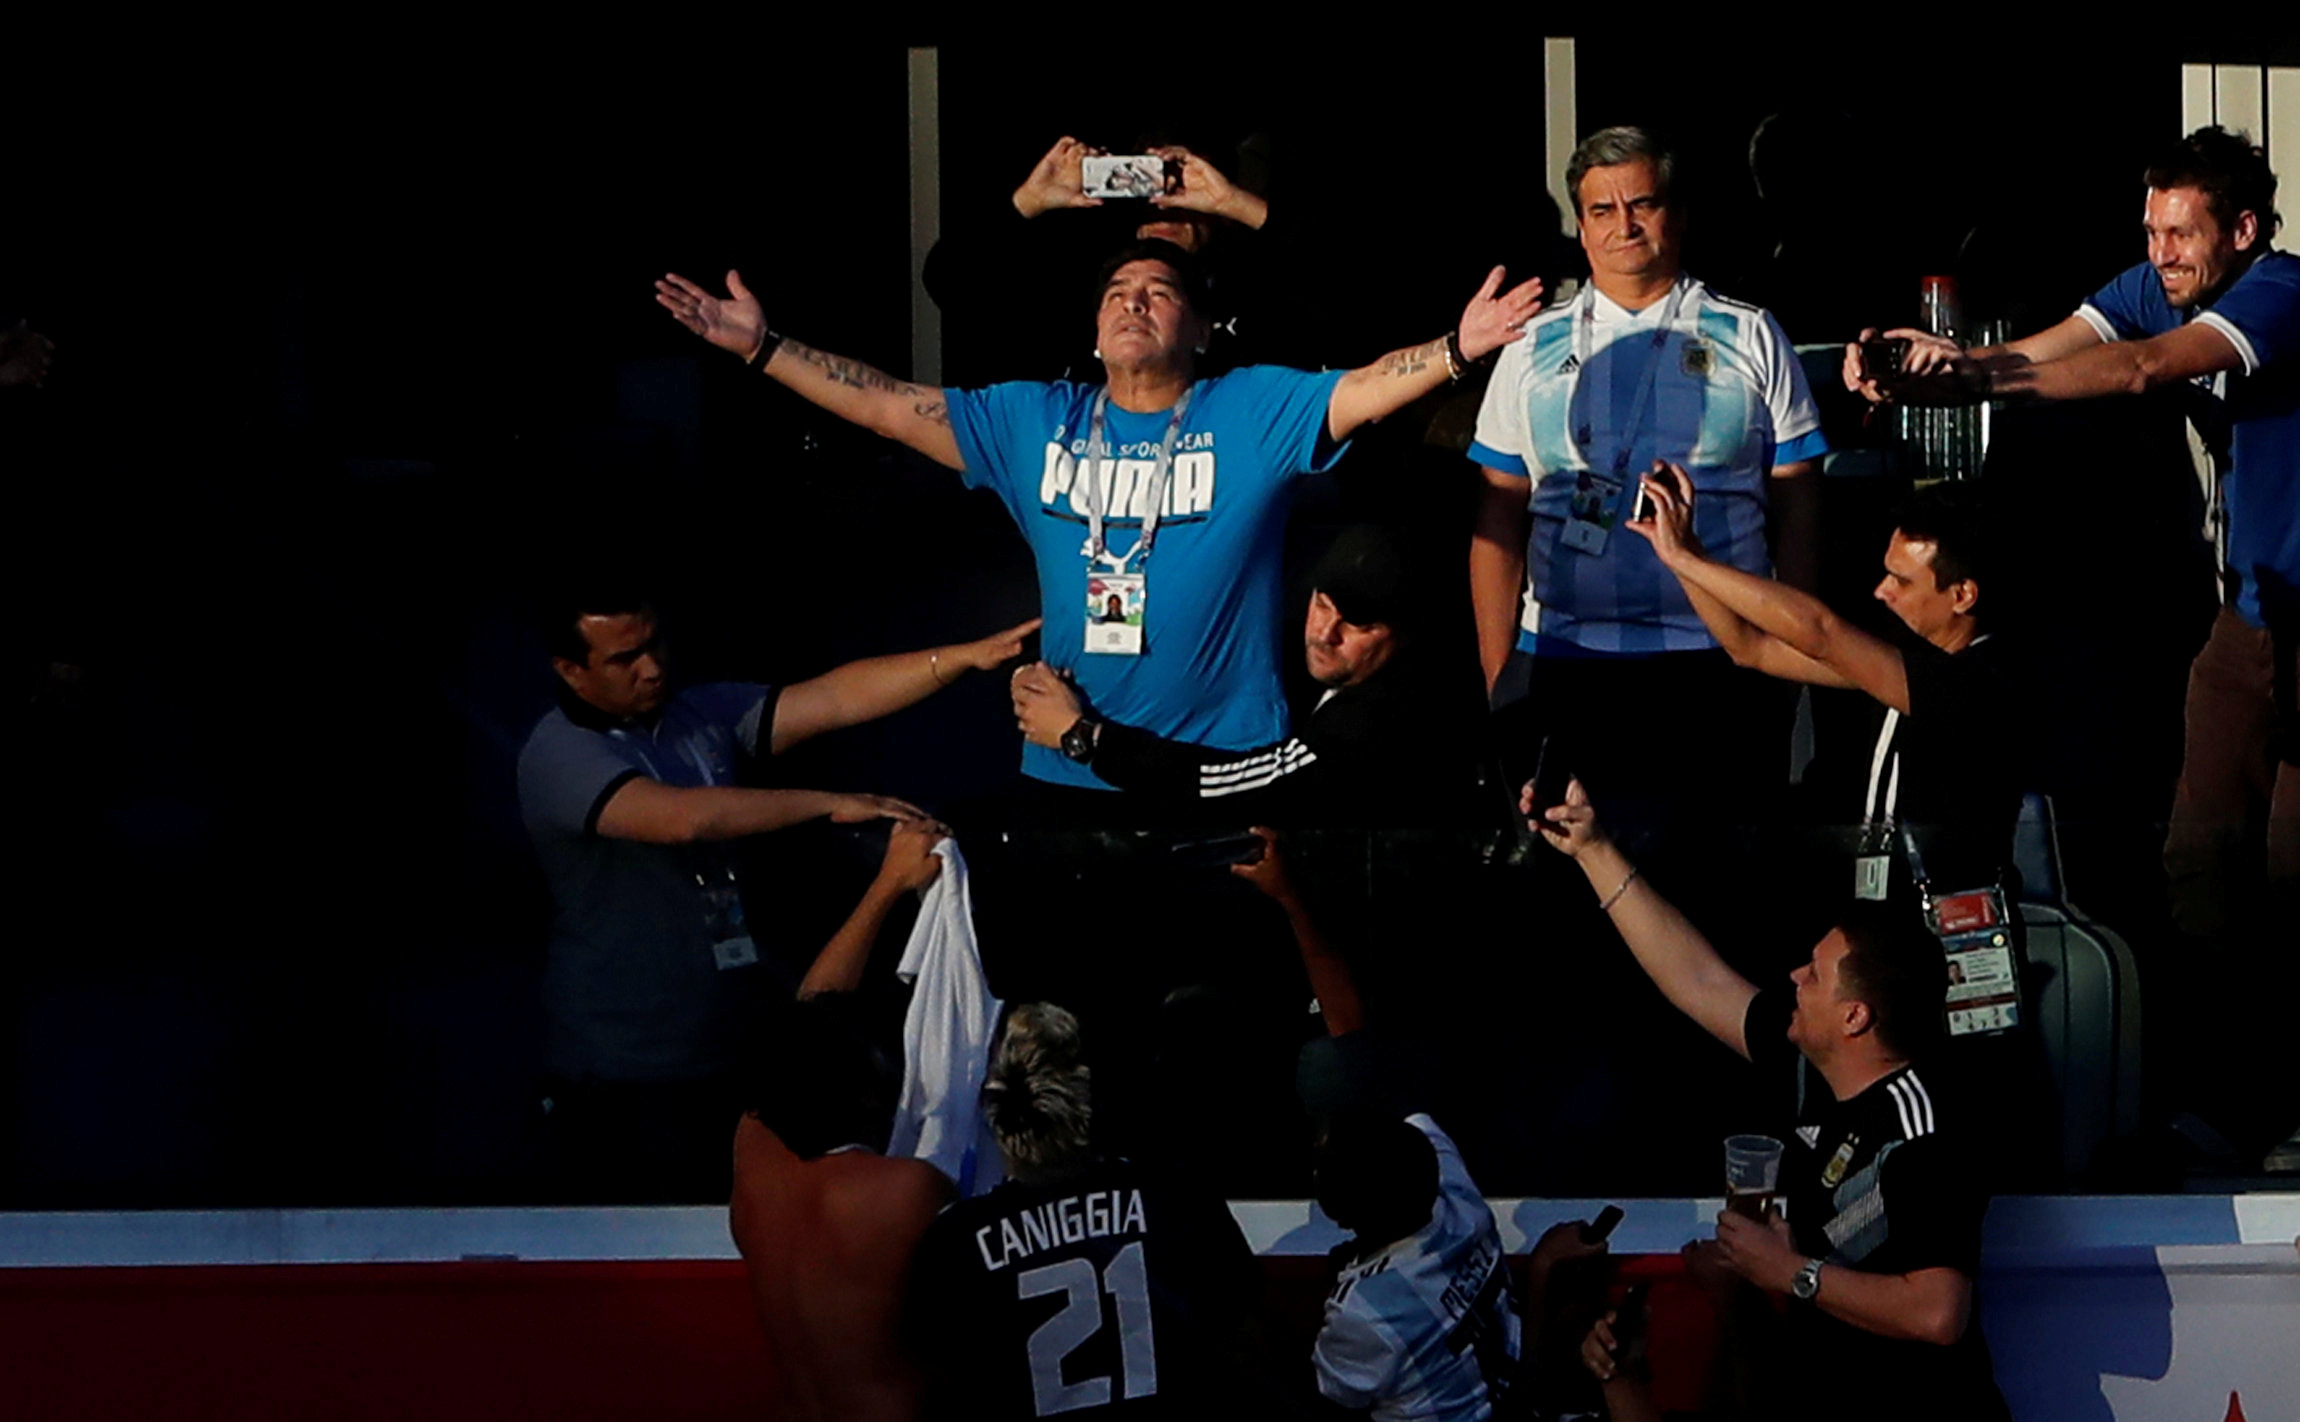 IMAGEN DE ARCHIVO. Personas tomas fotografías al exastro del fútbol argentino Diego Maradona durante el partido entre Argentina y Nigeria por el Grupo D del Mundial de Rusia, en San Petersburgo - Junio 26, 2018 REUTERS/Lee Smith/File Photo